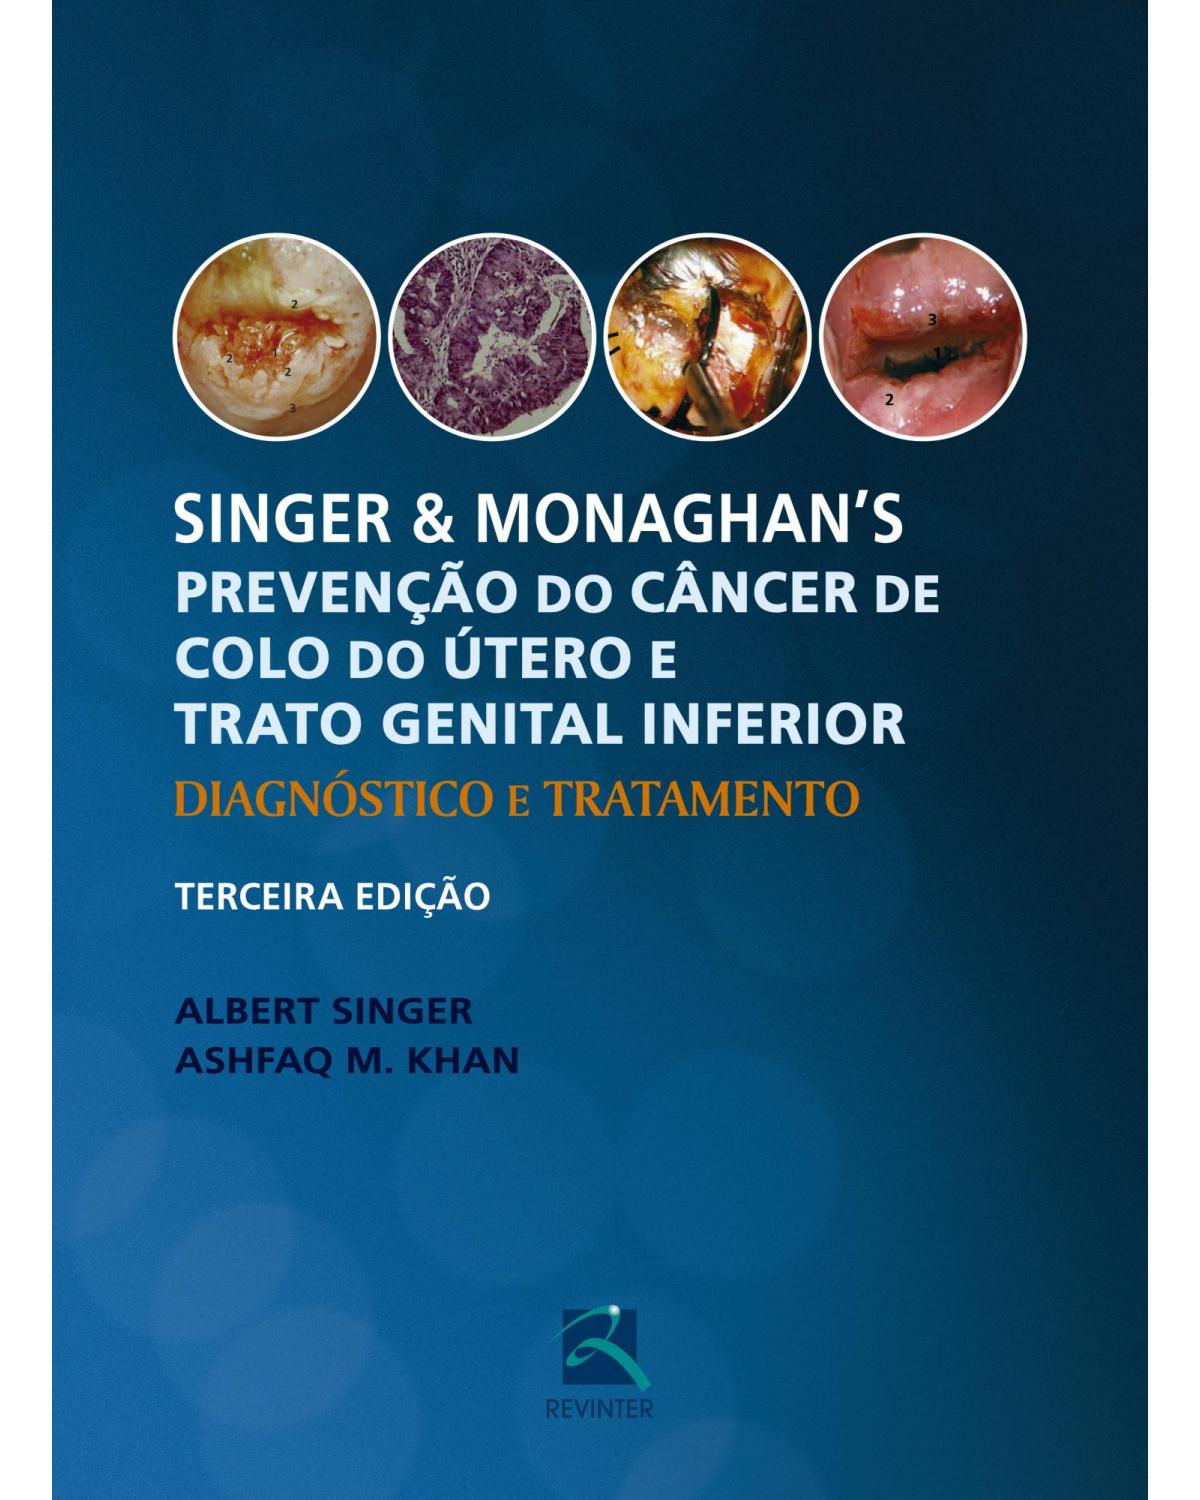 Singer e Monaghan's - Prevenção do Câncer de Colo do Útero e Trato Genital Inferior - Diagnóstico e Tratamento - 3ª Edição | 2017